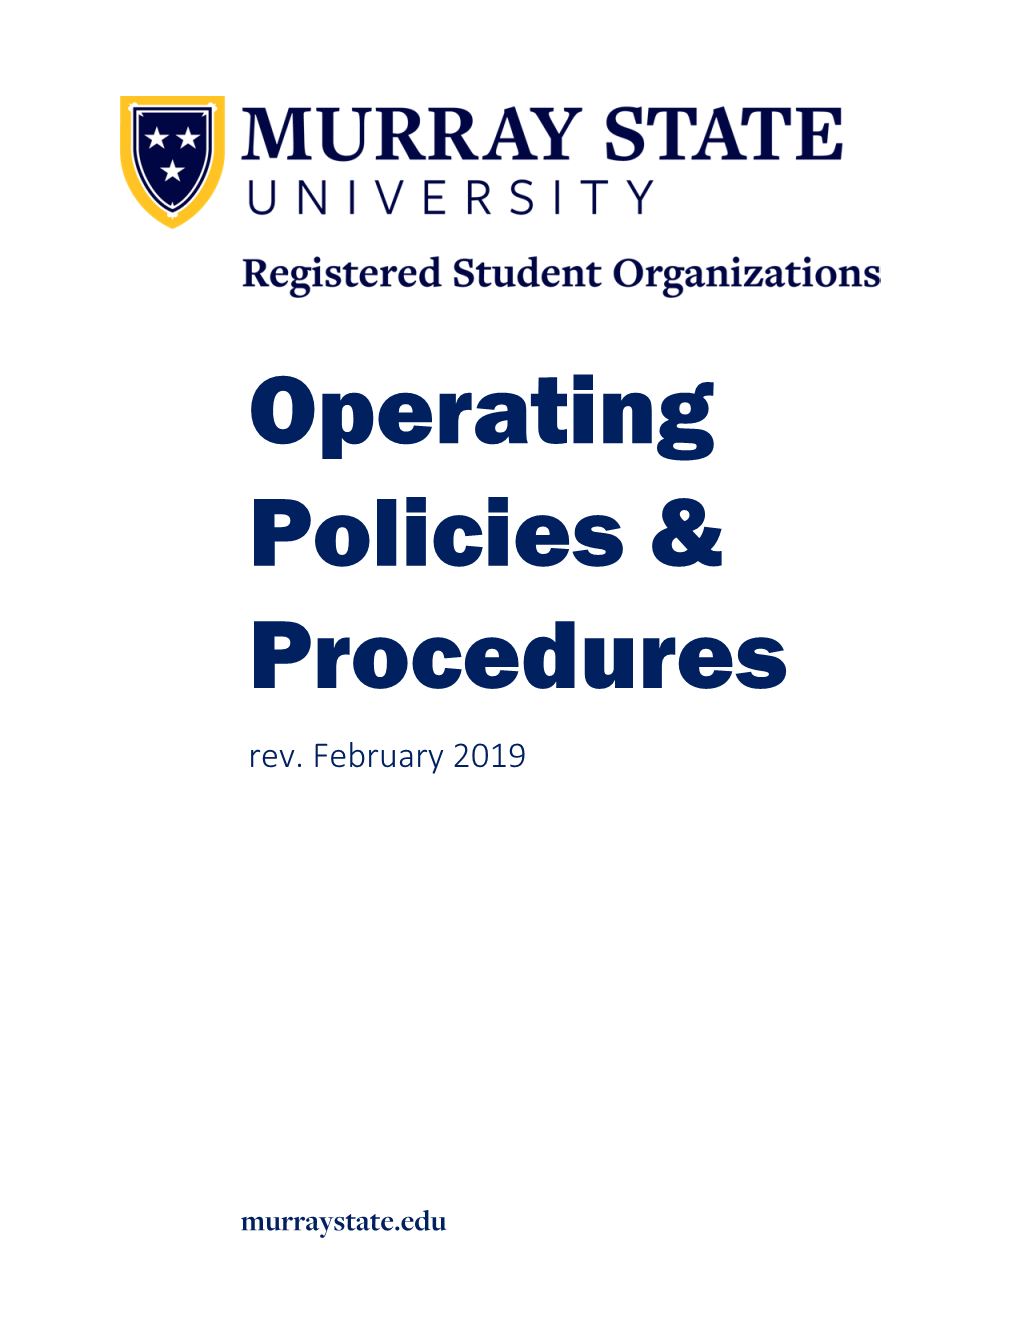 Operating Policies & Procedures